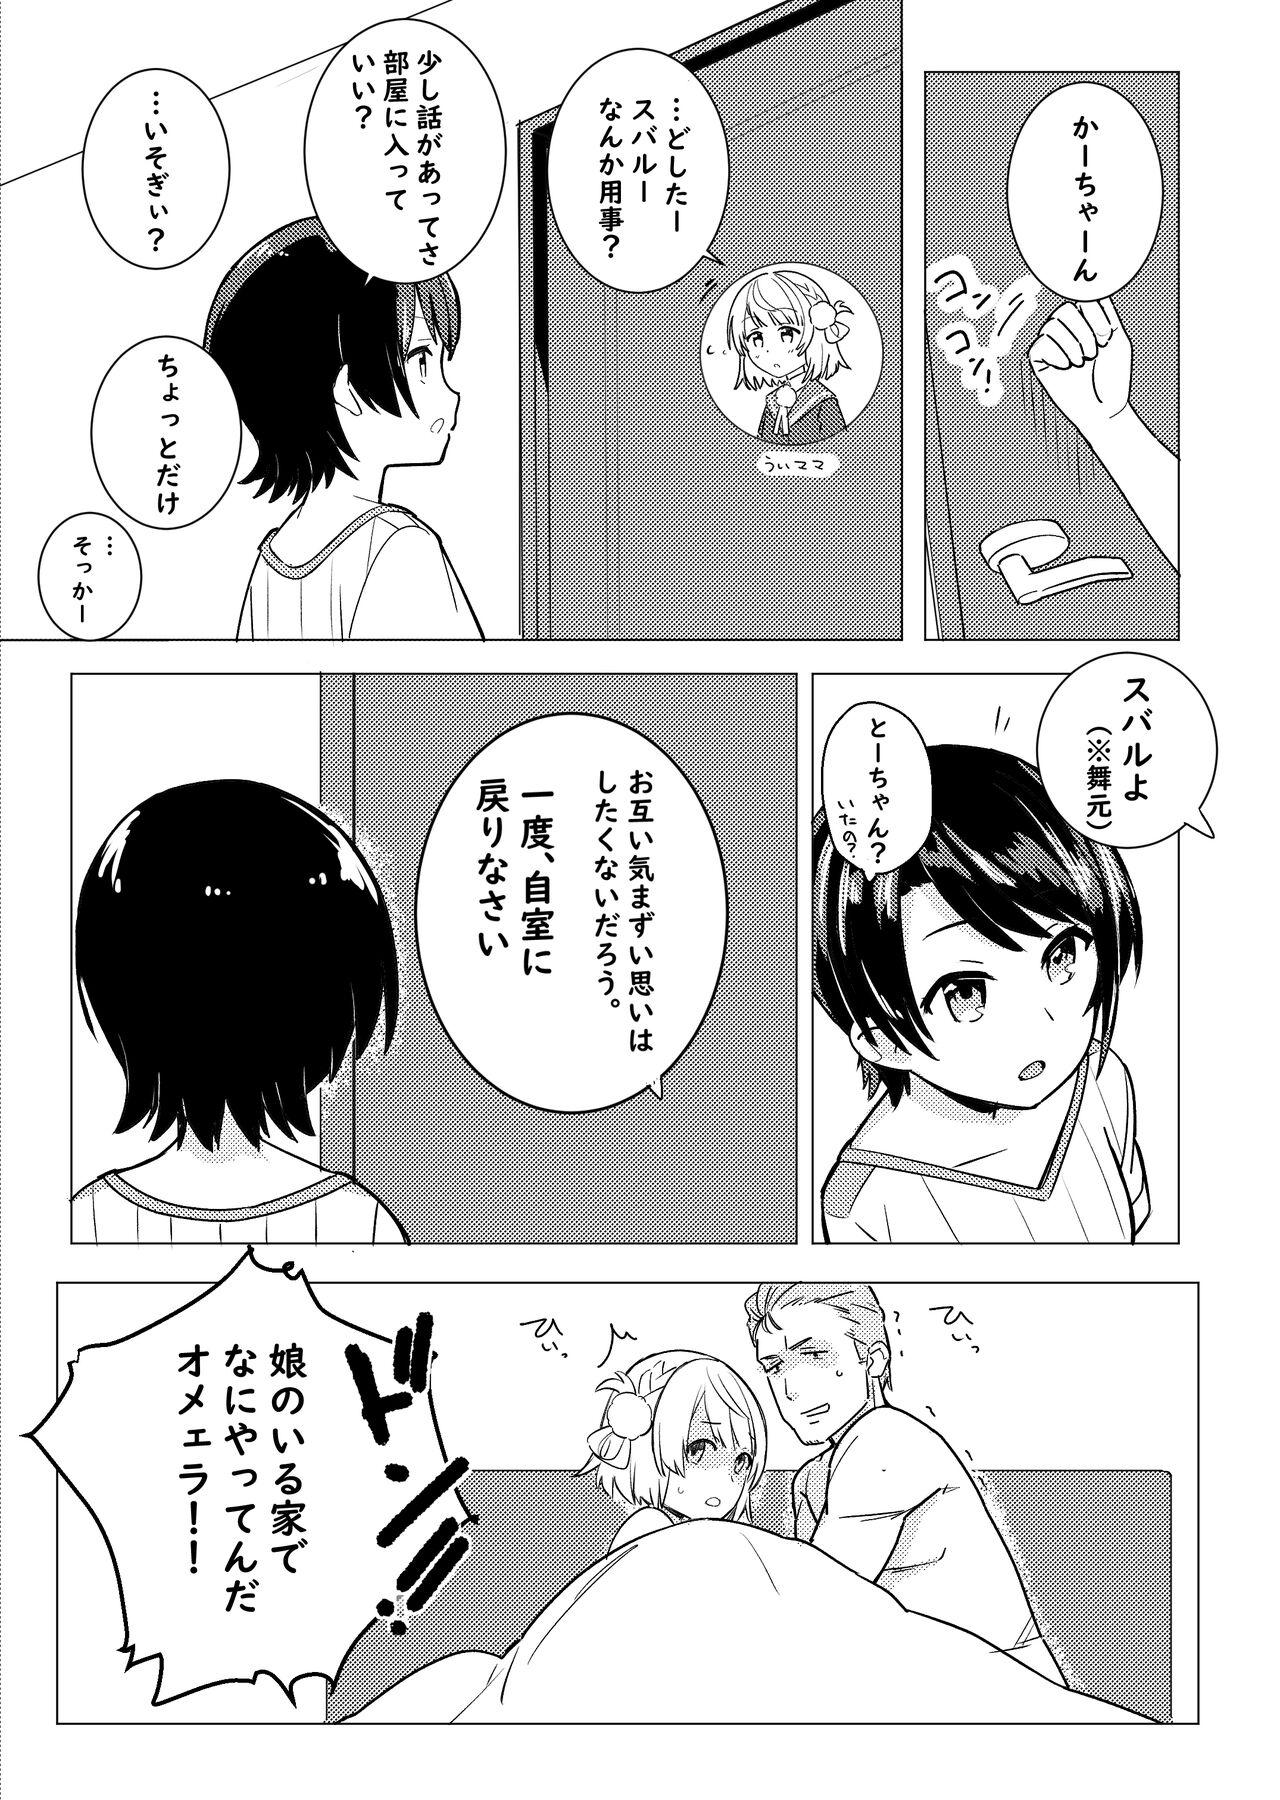 Chichona Twitter Short Manga - Hololive Bear - Page 5